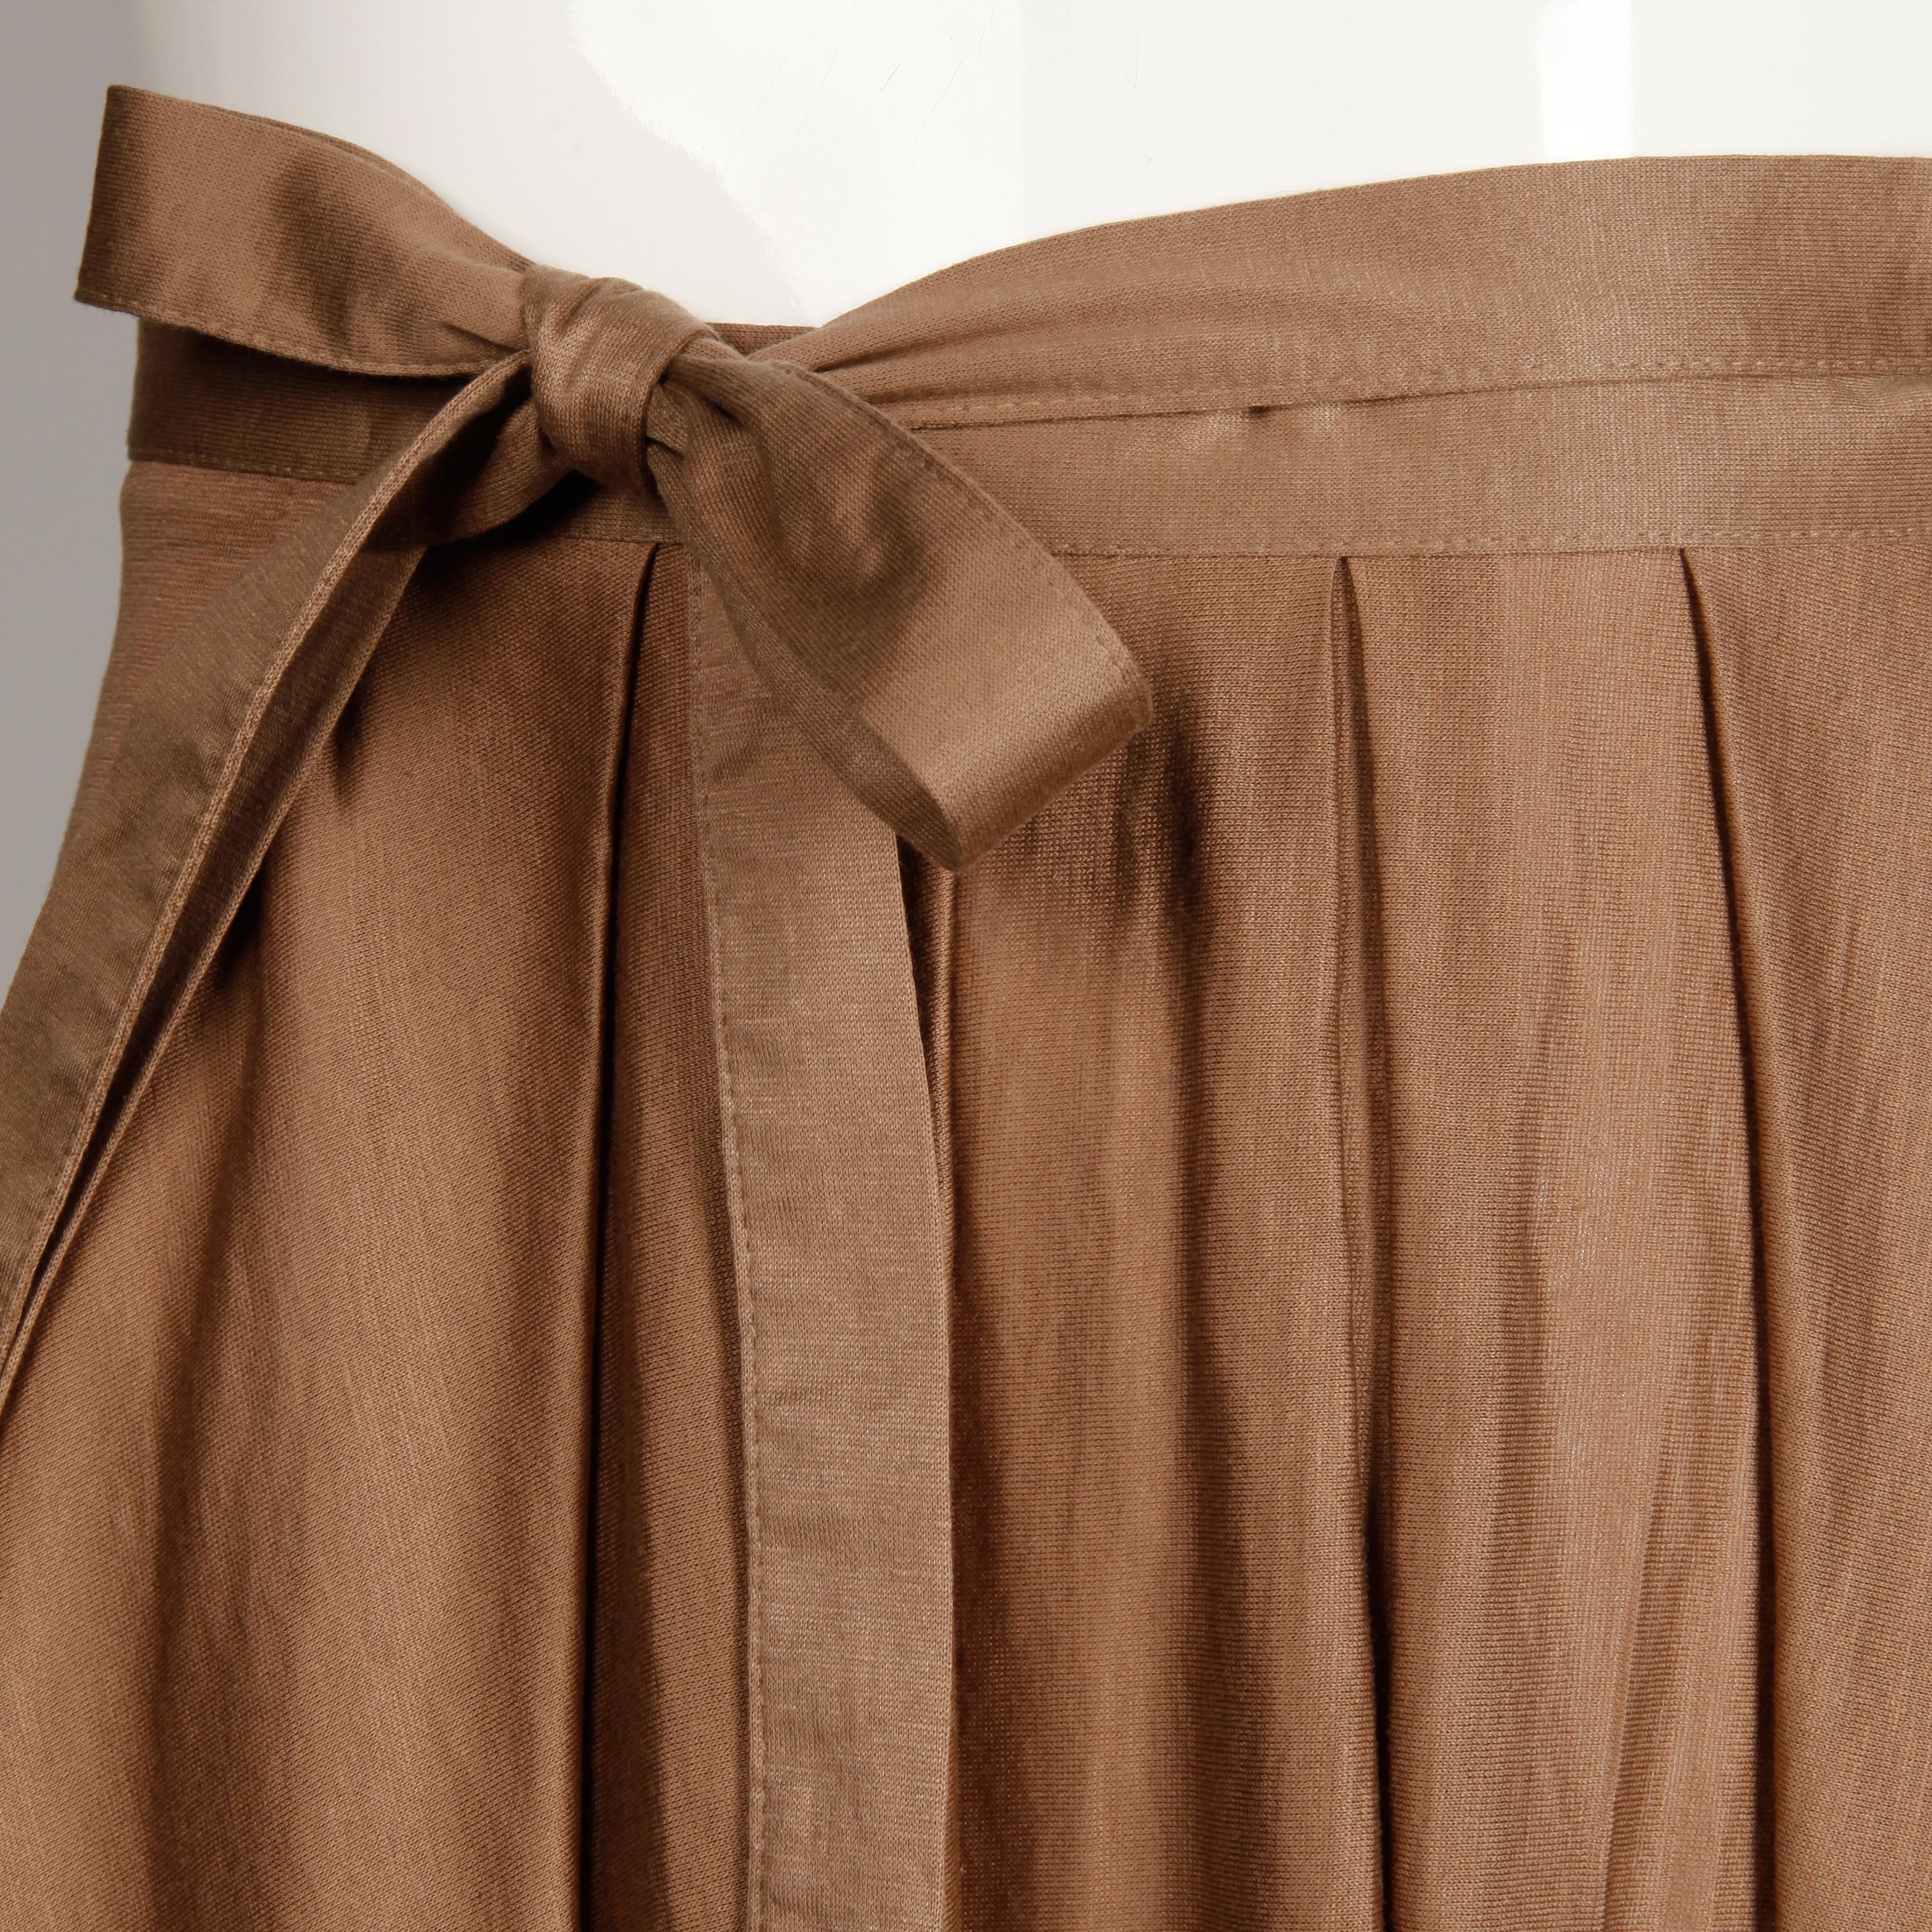 vintage brown skirt